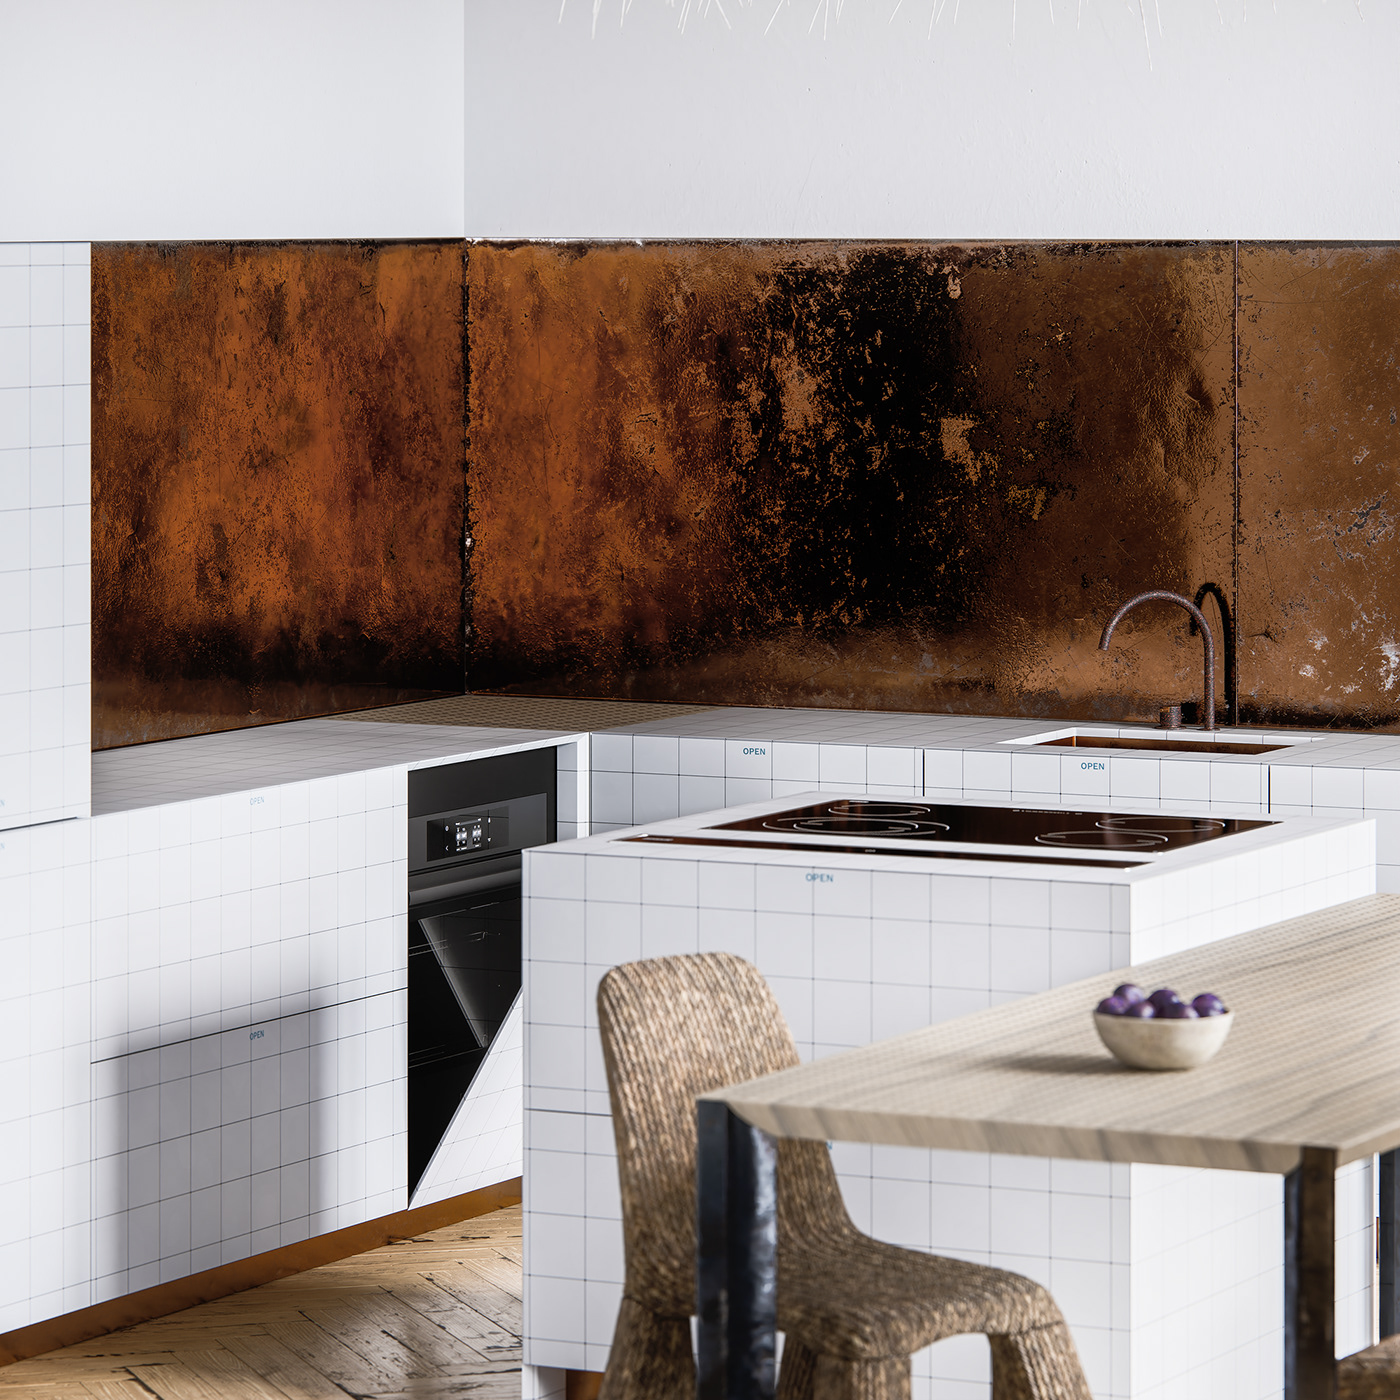 architecture archviz bright design Interior kitchen minimalist modern Render White